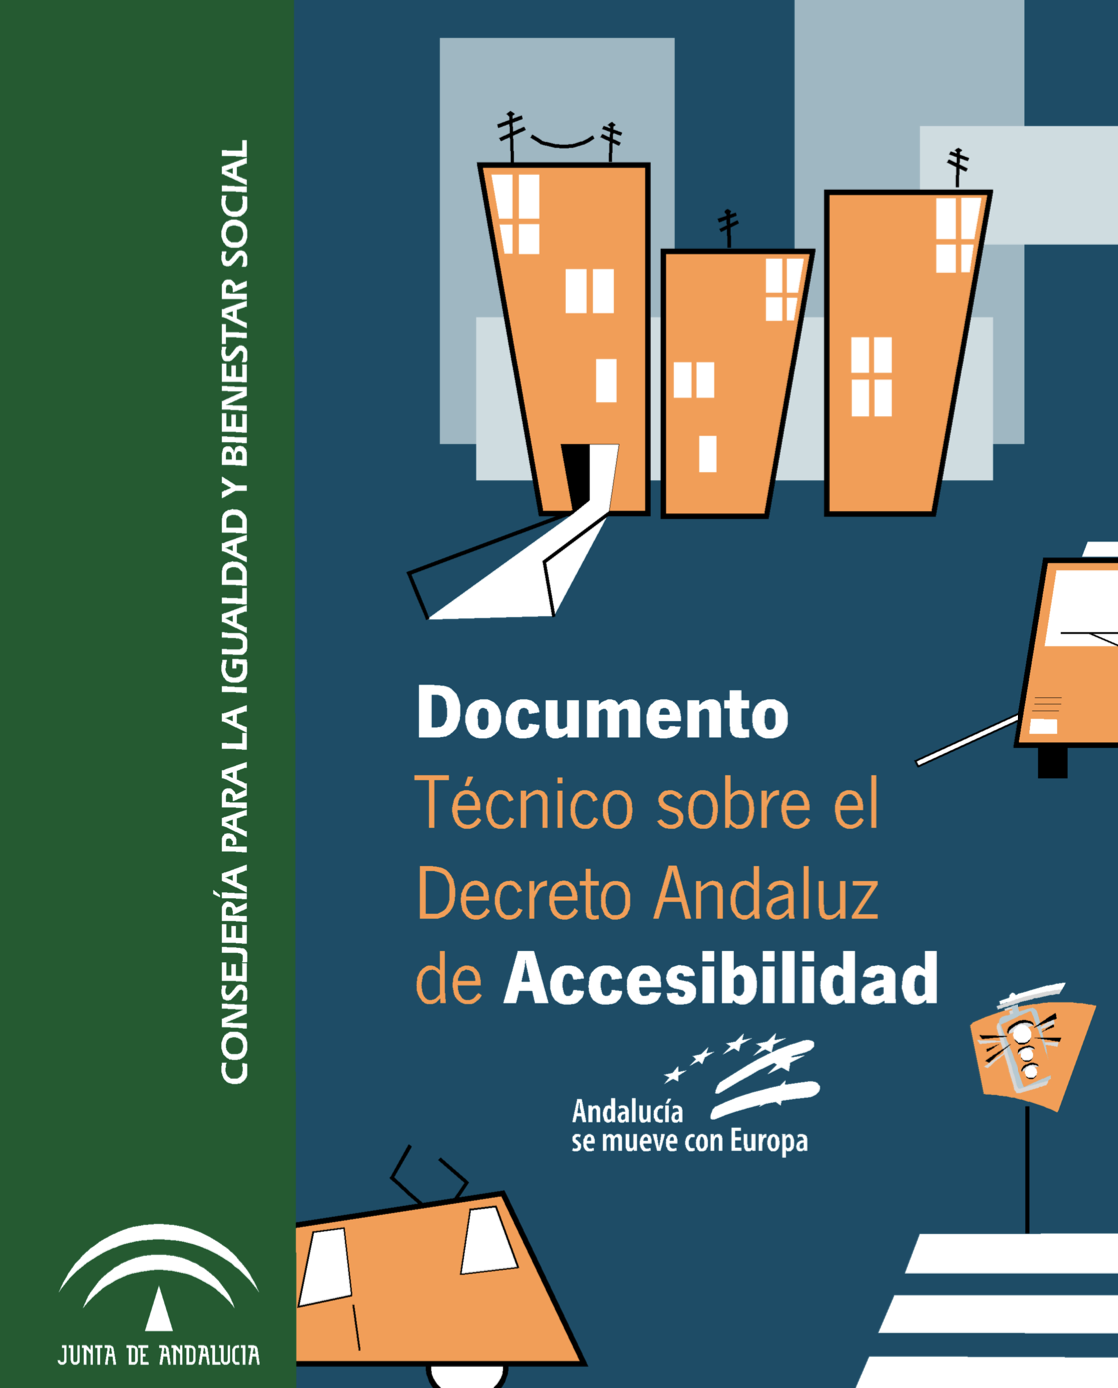 Decreto andaluz sobre accesibilidad